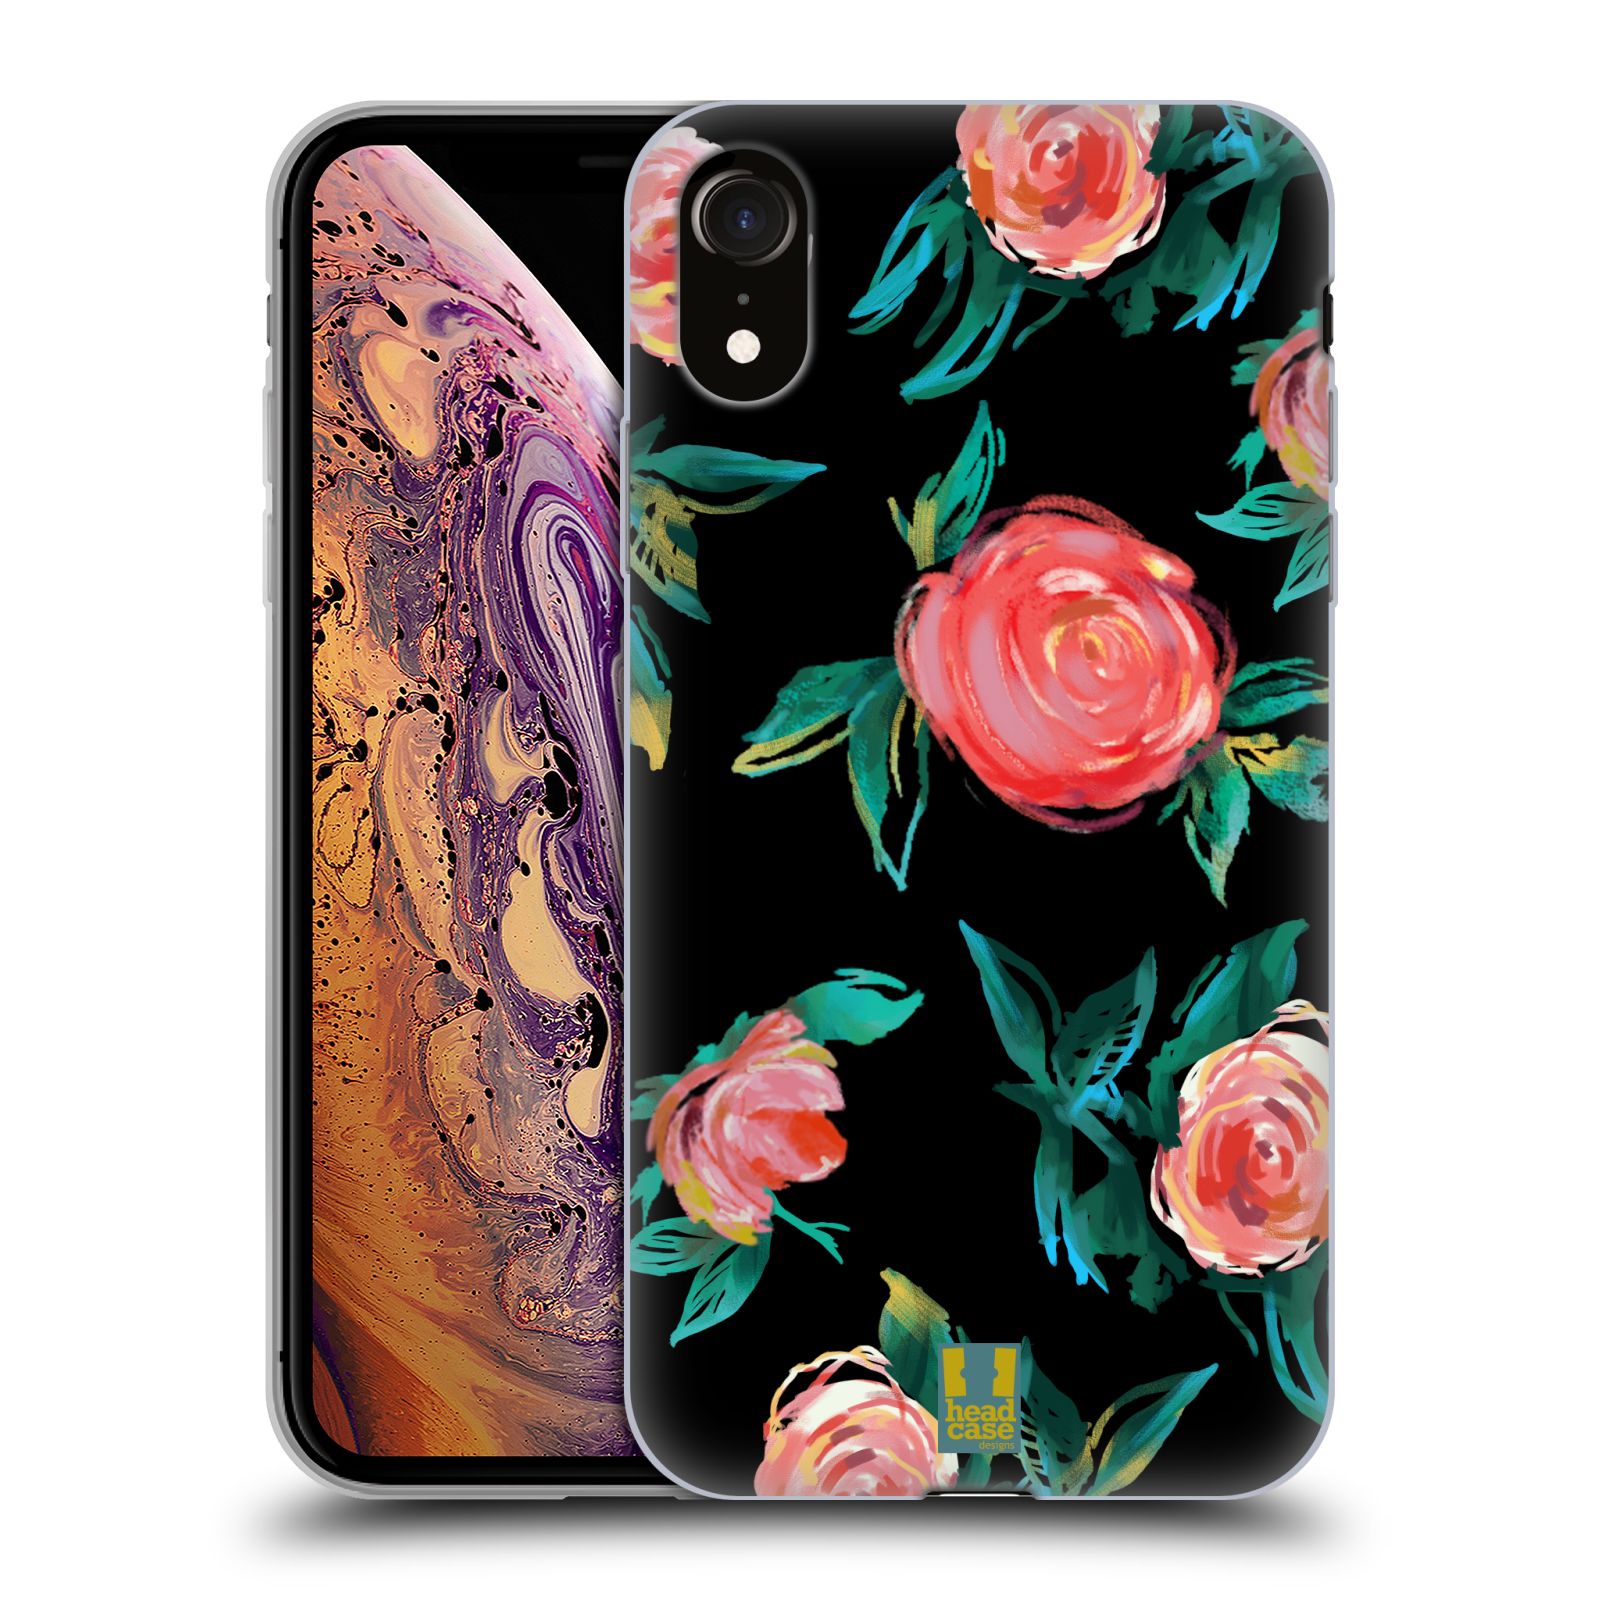 Silikonový obal na mobil Apple Iphone XR - HEAD CASE - Květy - růže na černém pozadí